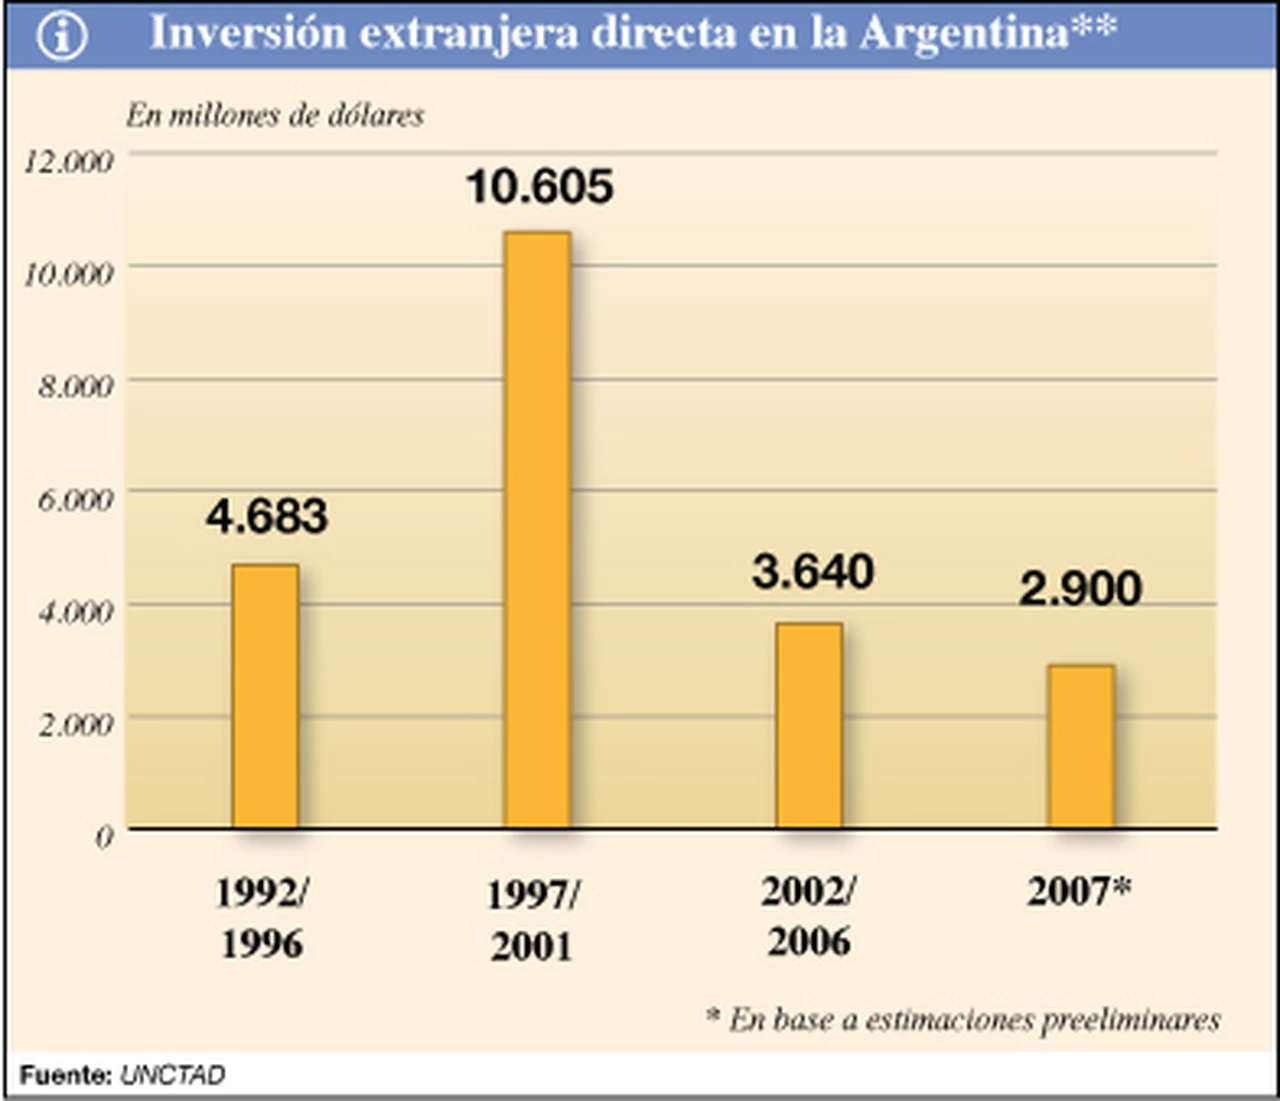 La inversión extranjera directa cayó fuerte en la Argentina